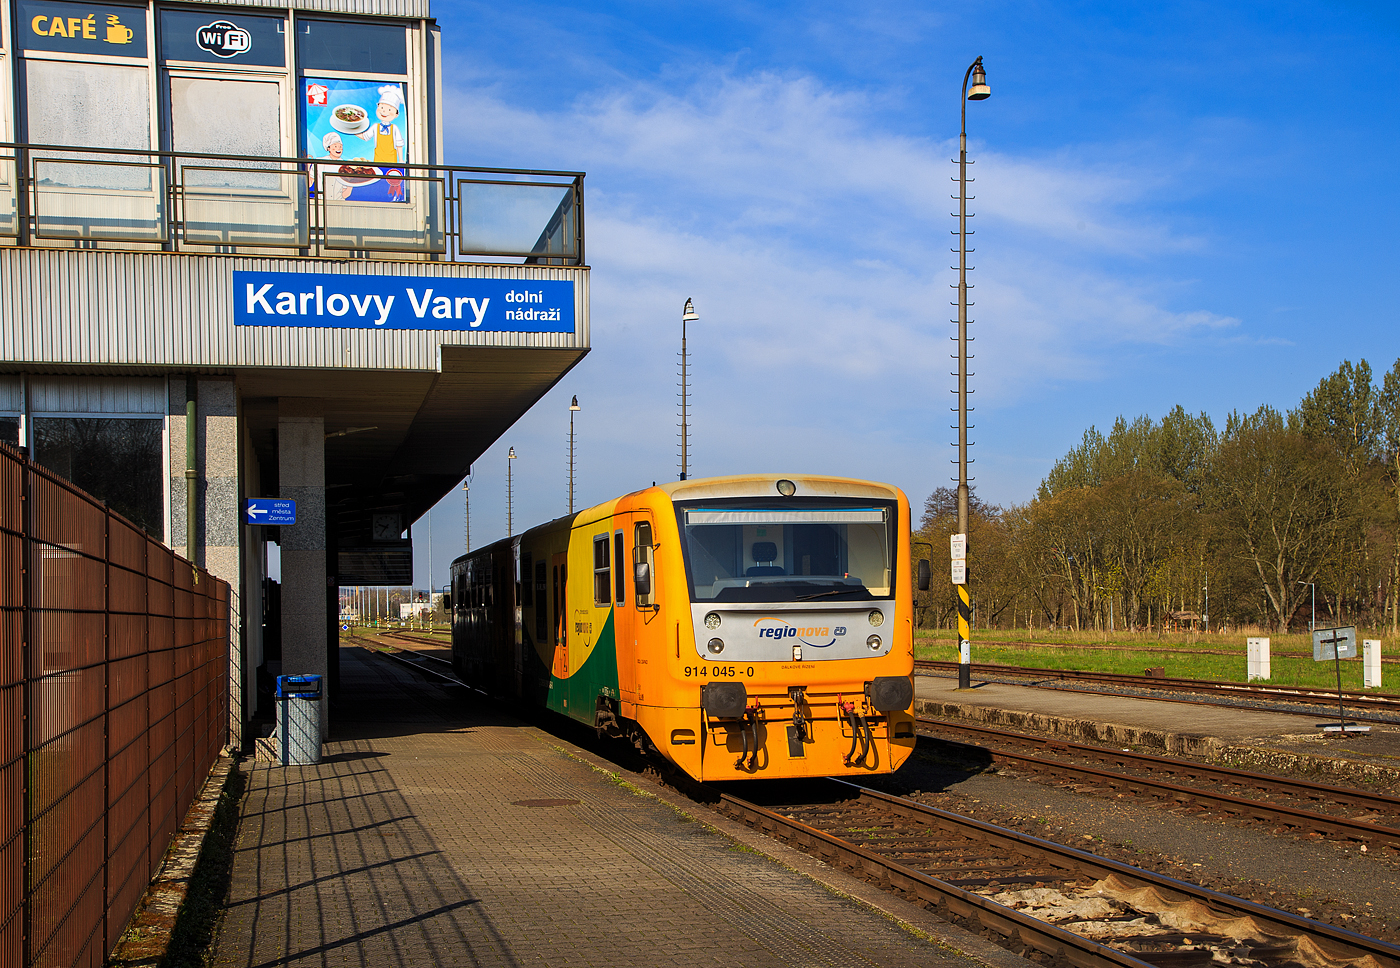 Der „Regionova“ 814 045-1/ 914 045-0 (CZ ČD 95 54 5 814 045-1/ CZ ČD 95 54 5 914 045-0), ein Dieseltriebwagen mit Niederflurbereich der tschechischen České dráhy (ČD), steht am 21.04.2023 in Karlovy Vary dolní nádraží (Karlsbad unterer Bahnhof), als Os 17106 nach Johanngeorgenstadt (Sachsen) via Karlovy Vary, Nejdek und Potucky, zur Abfahrt breit. Aber noch sind die Türen verschlossen.

Die Fahrzeuge der ČD-Baureihe 814/914 entstanden im Rahmen eines Rekonstruktionsprogrammes (2005 bis 2012) aus den Fahrzeugen der ČD-Baureihe 810,ex ČSD M 152.0  Chcípák  (Brotbüchse). Von den ČD werden sie als „Regionova“ vermarktet. Die Achsfolge 1'A' + 1'1 (jeweils zweiachsiger Trieb- und Steuerwage) merkt man als Fahrgast sehr.

Technische Merkmale:
Wesentliche Veränderungen gegenüber der Ursprungsbauart sind eine neue, leistungsfähigere Antriebsanlage mit dem Dieselmotor TEDOM M1.2C ML 640SE (ehemals LIAZ), welcher unter dem Wagenboden untergebracht ist. Es handelt sich um einen Viertakt-Reihen-6-Zylinder-Dieselmotor  mit Turbolader und Ladeluftkühler. Jeder Zylinder hat zwei Einlass- und zwei Auslassventile und eine Einspritzdüse. Die Kraftstoffeinspritzung erfolgt direkt; es wird von einer elektronisch gesteuerten Einspritzpumpe bereitgestellt. Die Ventile werden von einer einzigen Nockenwelle angetrieben. Der Ventiltrieb ist vom Typ OHV (überhängende Ventile). Die Abgase werden durch das Auspuffrohr auf das Dach des Fahrzeuges geleitet. Der Verbrennungsmotor erfüllt die EURO II-Emissionsgrenzwerte. Die Motorkühlung wird wie Wasser gehandhabt – die Kühlung des Motorkreislaufs und des Getriebes erfolgt über einen Aluminiumkühler der Firma AKG. Der Kühlerlüfter wird hydrostatisch angetrieben. Die Schmierung des Verbrennungsmotors erfolgt durch unter Druck stehendes Öl. 

Die Kraftübertragung vom Dieselmotor erfolgt über ein hydromechanisches Getriebe VOITH DIWA 864.3E auf die Achse. Zudem wurde eine bequemere Innenausstattung mit behindertengerechter Toilette, bessere Arbeitsbedingungen für den Lokführer, bessere Fahreigenschaften und geringere Umweltauswirkungen der Antriebsanlage erreicht. Die Regionova sind nach wie vor mit Schraubenkupplung ausgerüstet und somit mit anderen Fahrzeugen freizügig kuppelbar.

Im Steuerwagen, der zwischen den Radsätzen einen Niederflurbereich auf etwa 50 % der Wagenlänge aufweist, befinden sich das Traglastenabteil, eine Auffahrrampe für Rollstühle, die Toilette und 34 Sitzplätze. Der Einstieg liegt in diesem Bereich in Wagenmitte. Der Triebwagen, in normaler Bodenhöhe aufgebaut, besitzt Fahrgastabteile mit 50 Sitzplätzen. Die Antriebsanlage liegt wie bei der Ursprungsbauart unter dem Wagenboden, auch die Lage der Einstiege wurde bei den Triebwagen nicht verändert.

Neben der Baureihe 814.0 wurden ab 2007auch Fahrzeuge  zur dreiteiligen (Trio) Baureihe 814.2 umgebaut. Eine solche Einheit besteht dann aus zwei Motorwagen und einem Mittelwagen. Die dreiteiligen Züge bieten 135Sitzplätze anstatt bei den zweiteiligen Wagen 84. 

TECHNISCHE DATEN der BR 814.0/914.0 (zweiteilig / Duo):
Hersteller: BR 810 Vagónka Studénka  (heute Škoda Vagonka a.s.) 
Umbau: Pars Nova a.s. in Šumperk (heute auch Škoda)
Spurweite: 1.435 mm (Normalspur)
Achsfolge: 1'A' + 1'1
Länge über Puffer: 28.440 mm
Leergewicht: 39.6 t
Radsatzfahrmasse: 9,75 t
Motorentyp: 1x TEDOM M1.2C ML 640SE (ehemals LIAZ)
Motorhubraum: 11.946 Liter (Bohrung 130 mm / Hub 150 mm)
Installierte Leistung: 242 kW bei 1.950 U/min
Getriebe: Voith Diwa 864.3E
Leistungsübertragung: hydromechanisch
Anfahrzugkraft: 54 kN
Höchstgeschwindigkeit: 90 km/h
Sitzplätze: 84
Stehplätze: 105
Fußbodenhöhe: 570 mm (Niederflurteil)